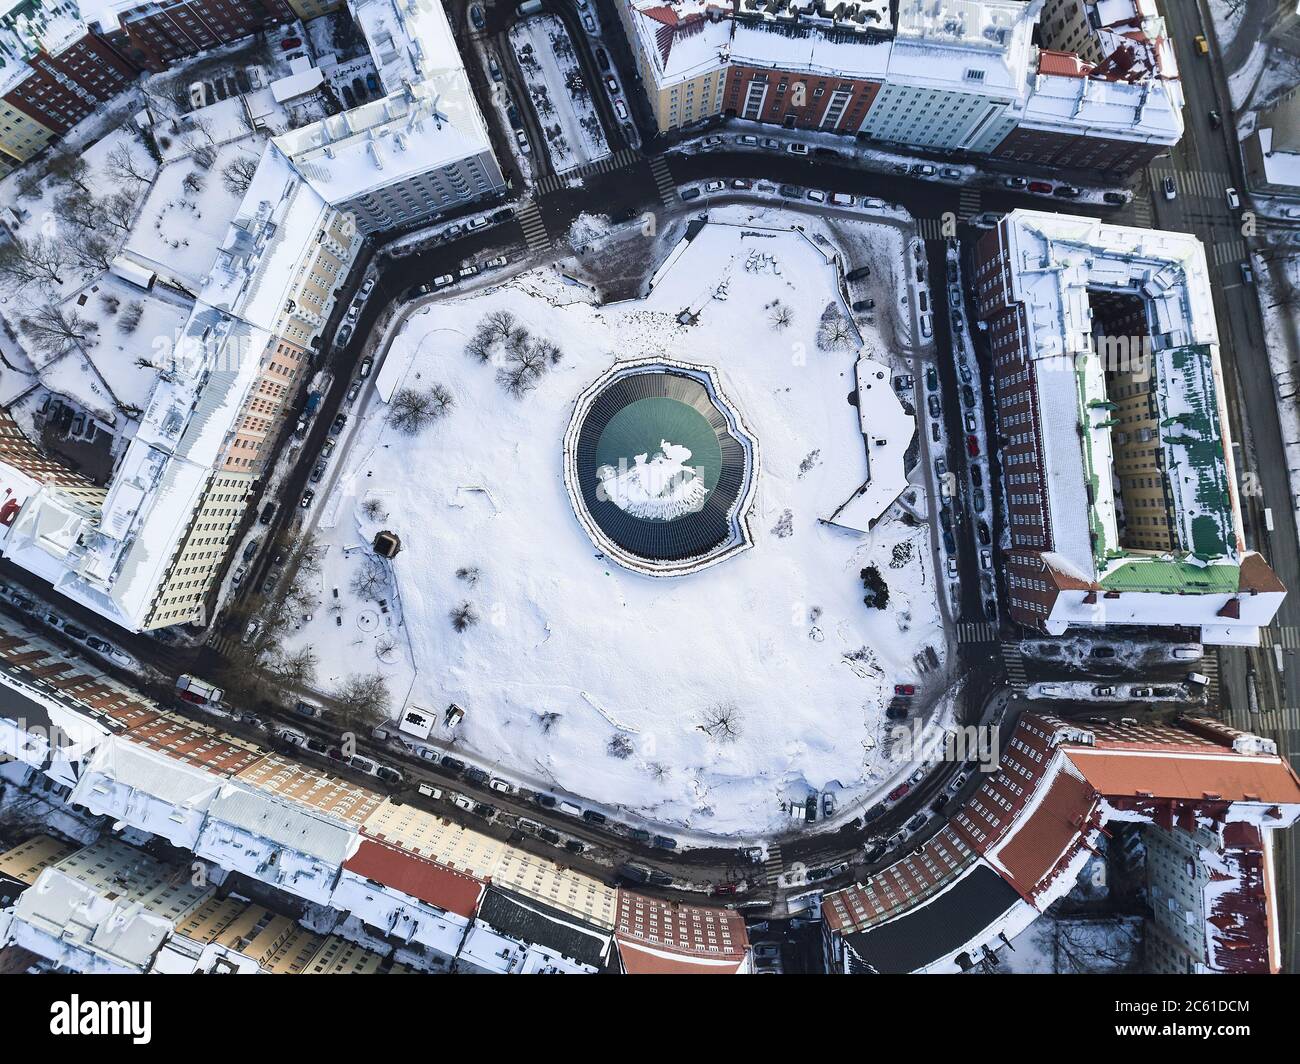 Helsinki, Finlandia - 21 febbraio 2017: Veduta aerea della Chiesa di Temppeliaukio Foto Stock